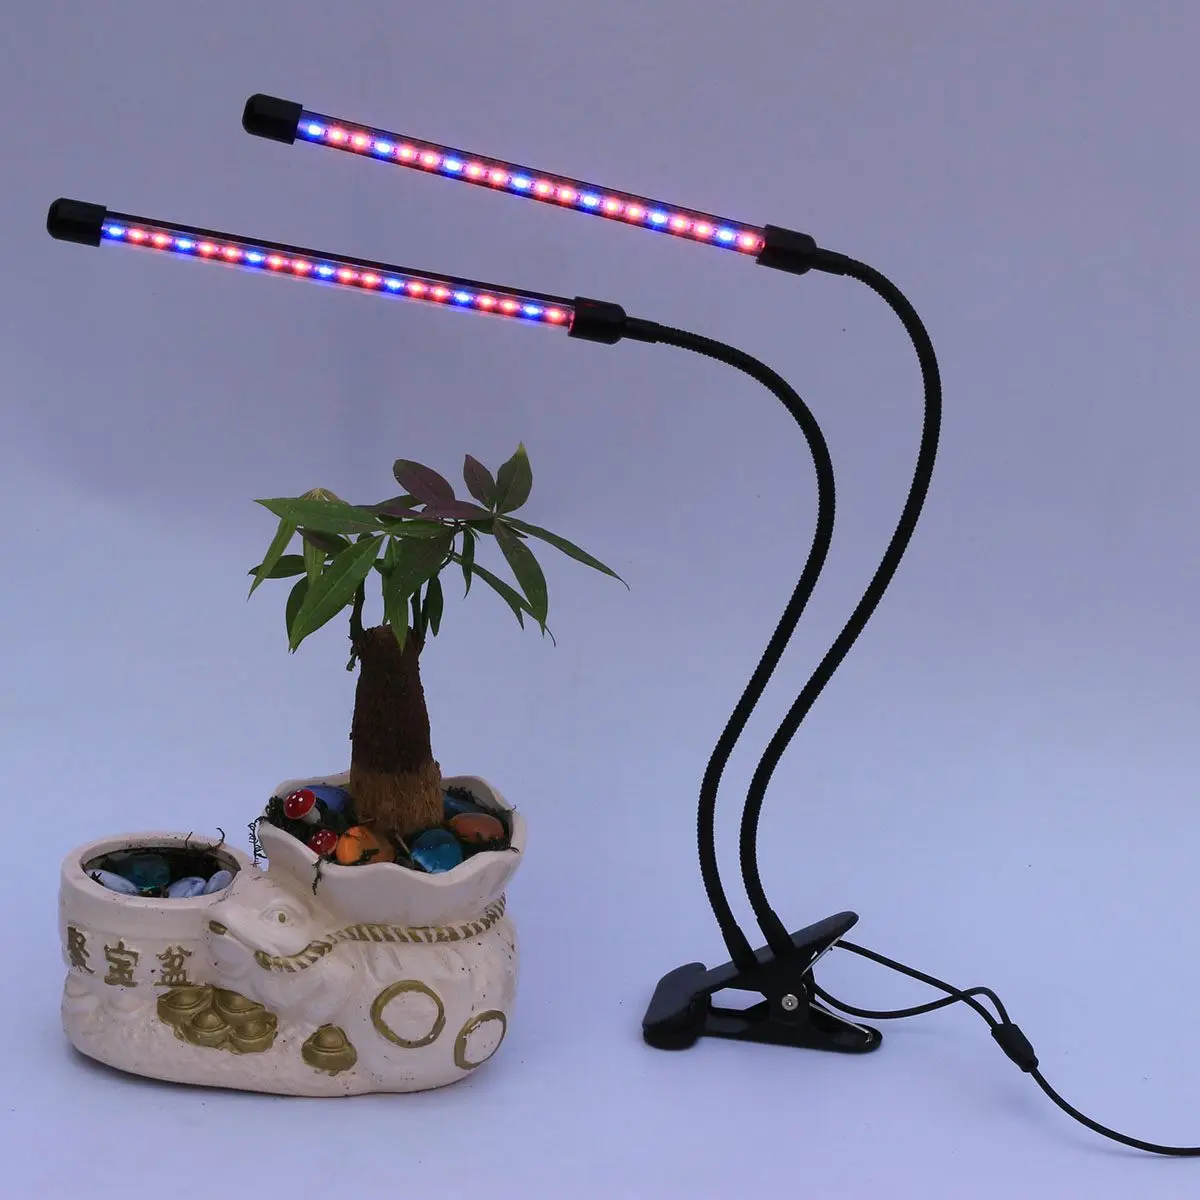 2018 обновленная 18 W Dual Head синхронизации светодиодный растет светильник 40 светодиодный фишки с красный/синий спектр для комнатных растений